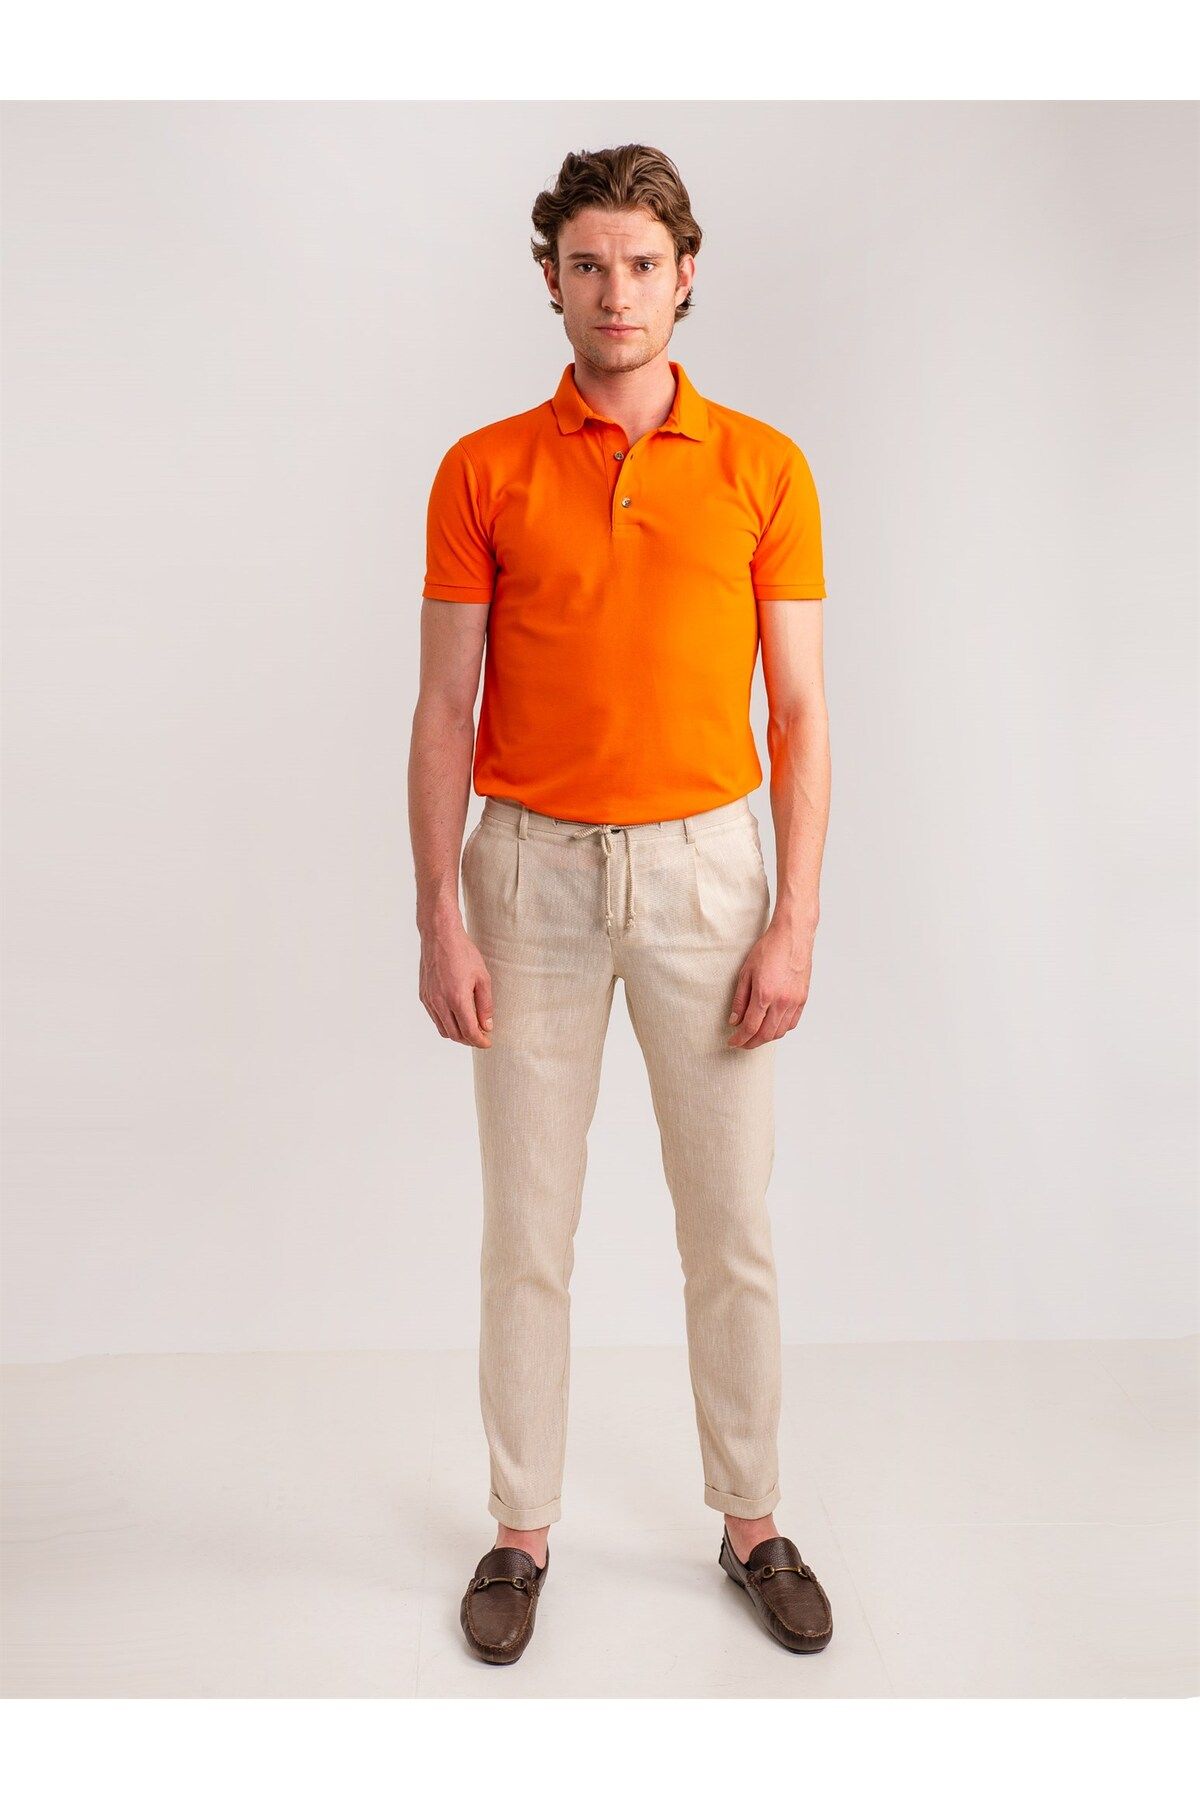 Dufy تی شرت یقه پولو باریک مردانه نارنجی - 49772